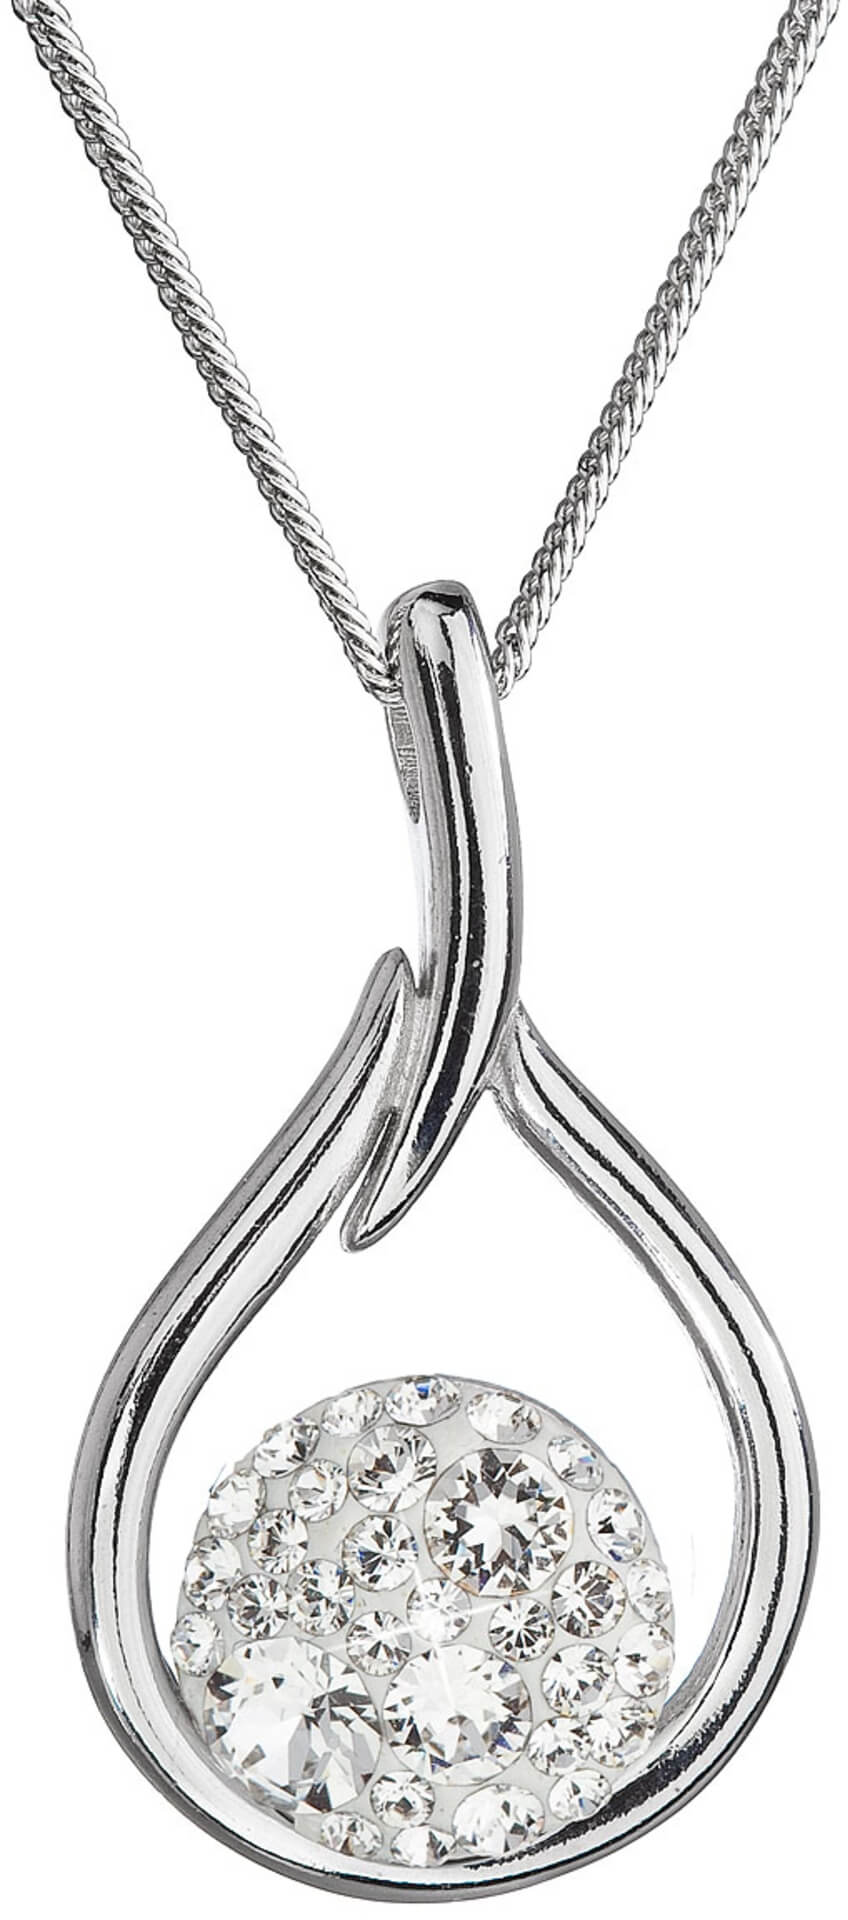 Evolution Group Nadčasový stříbrný náhrdelník s krystaly Swarovski 32075.1 (řetízek, přívěsek)